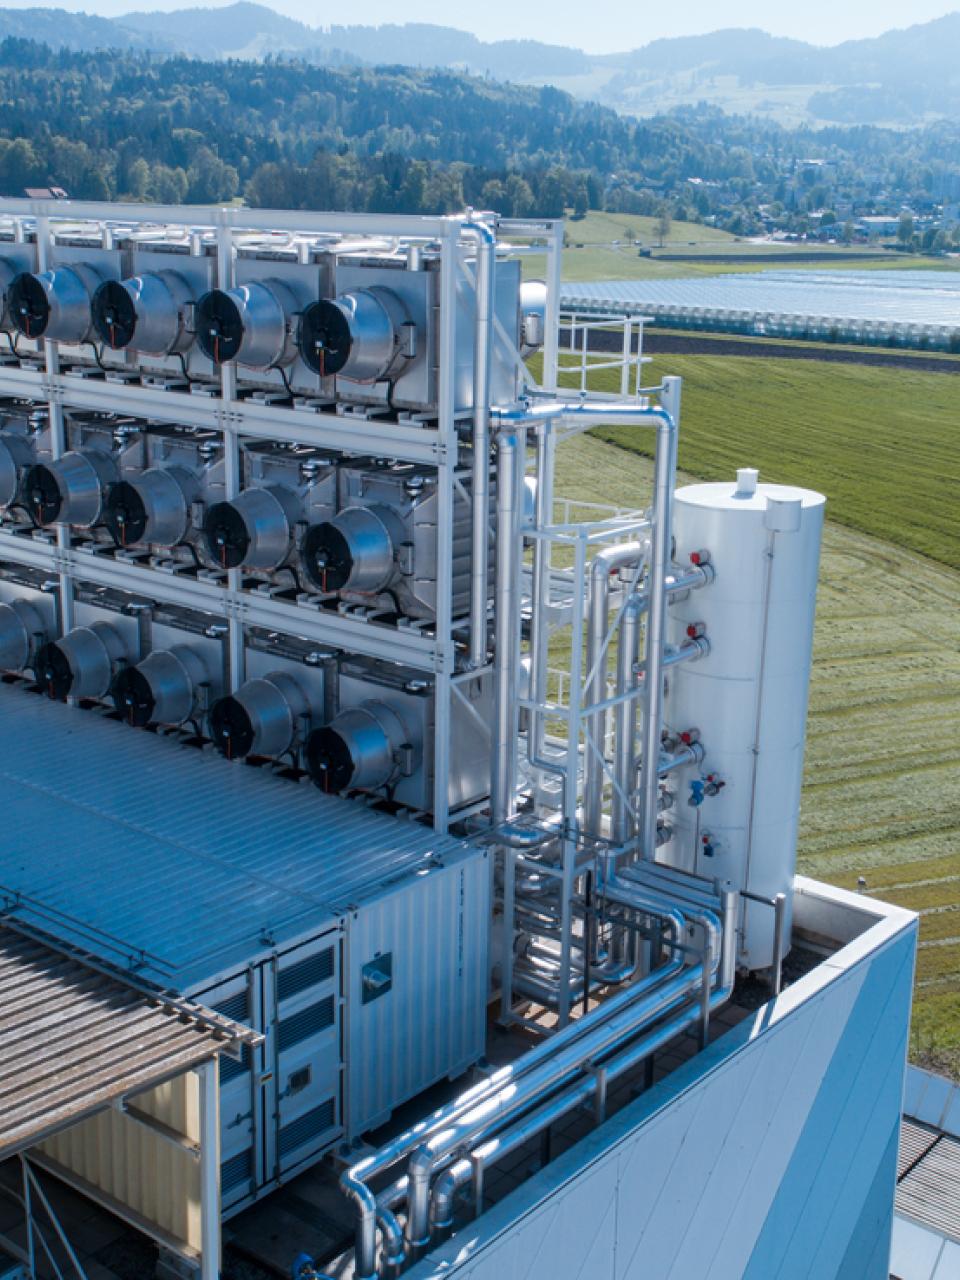 Sul tetto dell’inceneritore di Hinwil (ZH) nel 2017 sono stati installati 18 sensori in grado di catturare il biossido di carbonio. Da allora hanno assorbito 900 tonnellate di CO2 dall’atmosfera, pari alle emissioni di una trentina di economie domestiche.